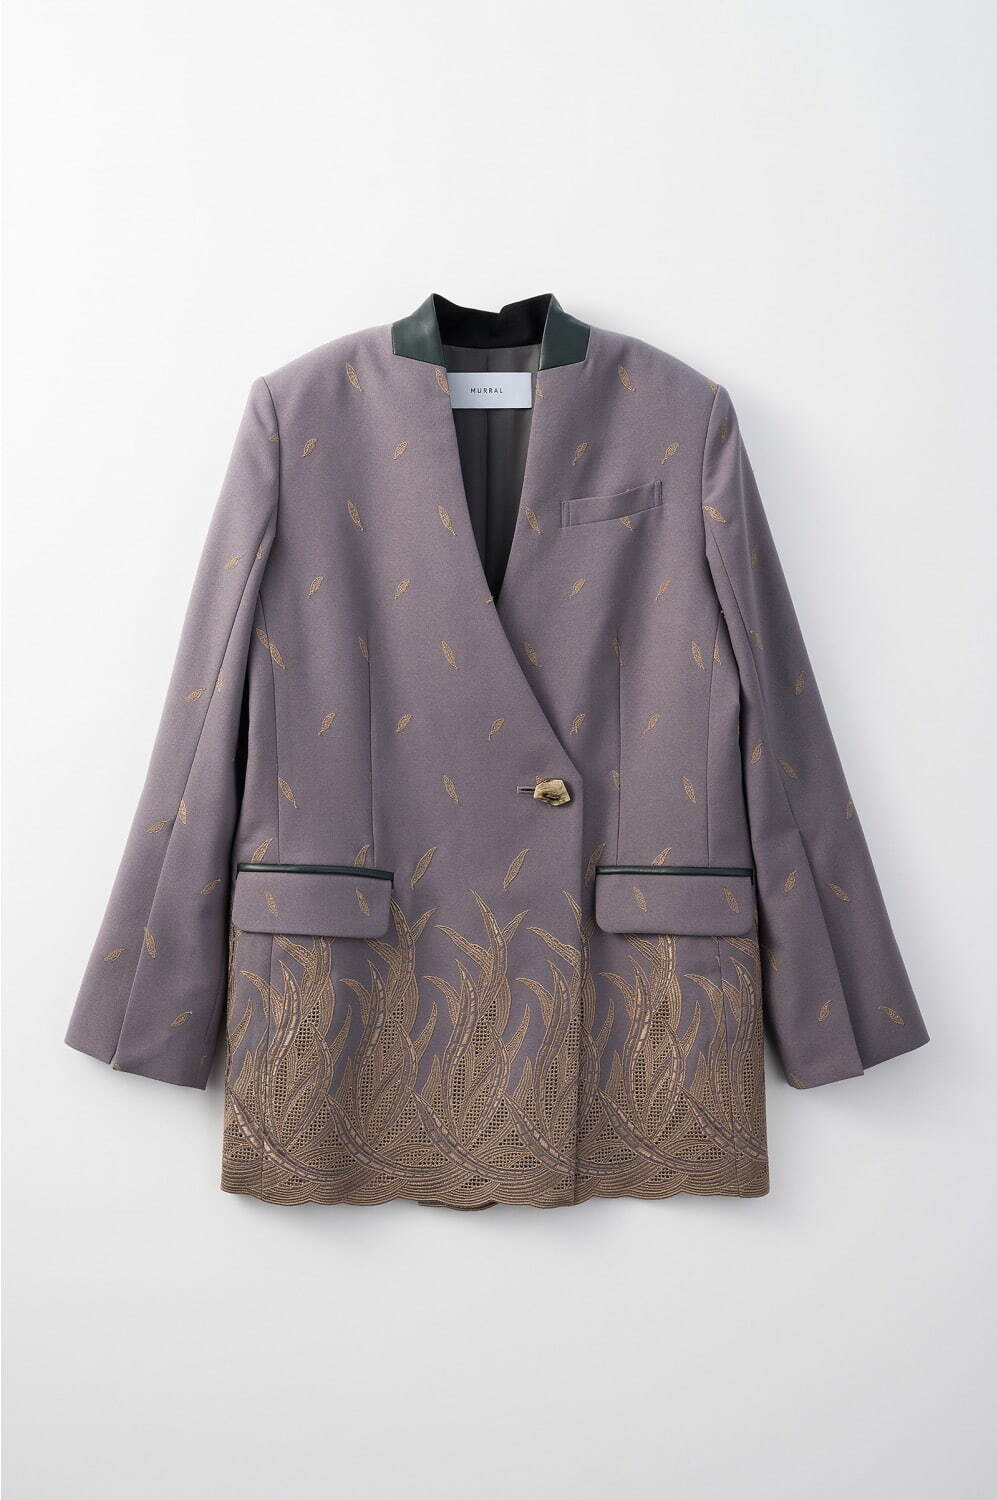 Embroidered leaves slit sleeve blazer 51,700円